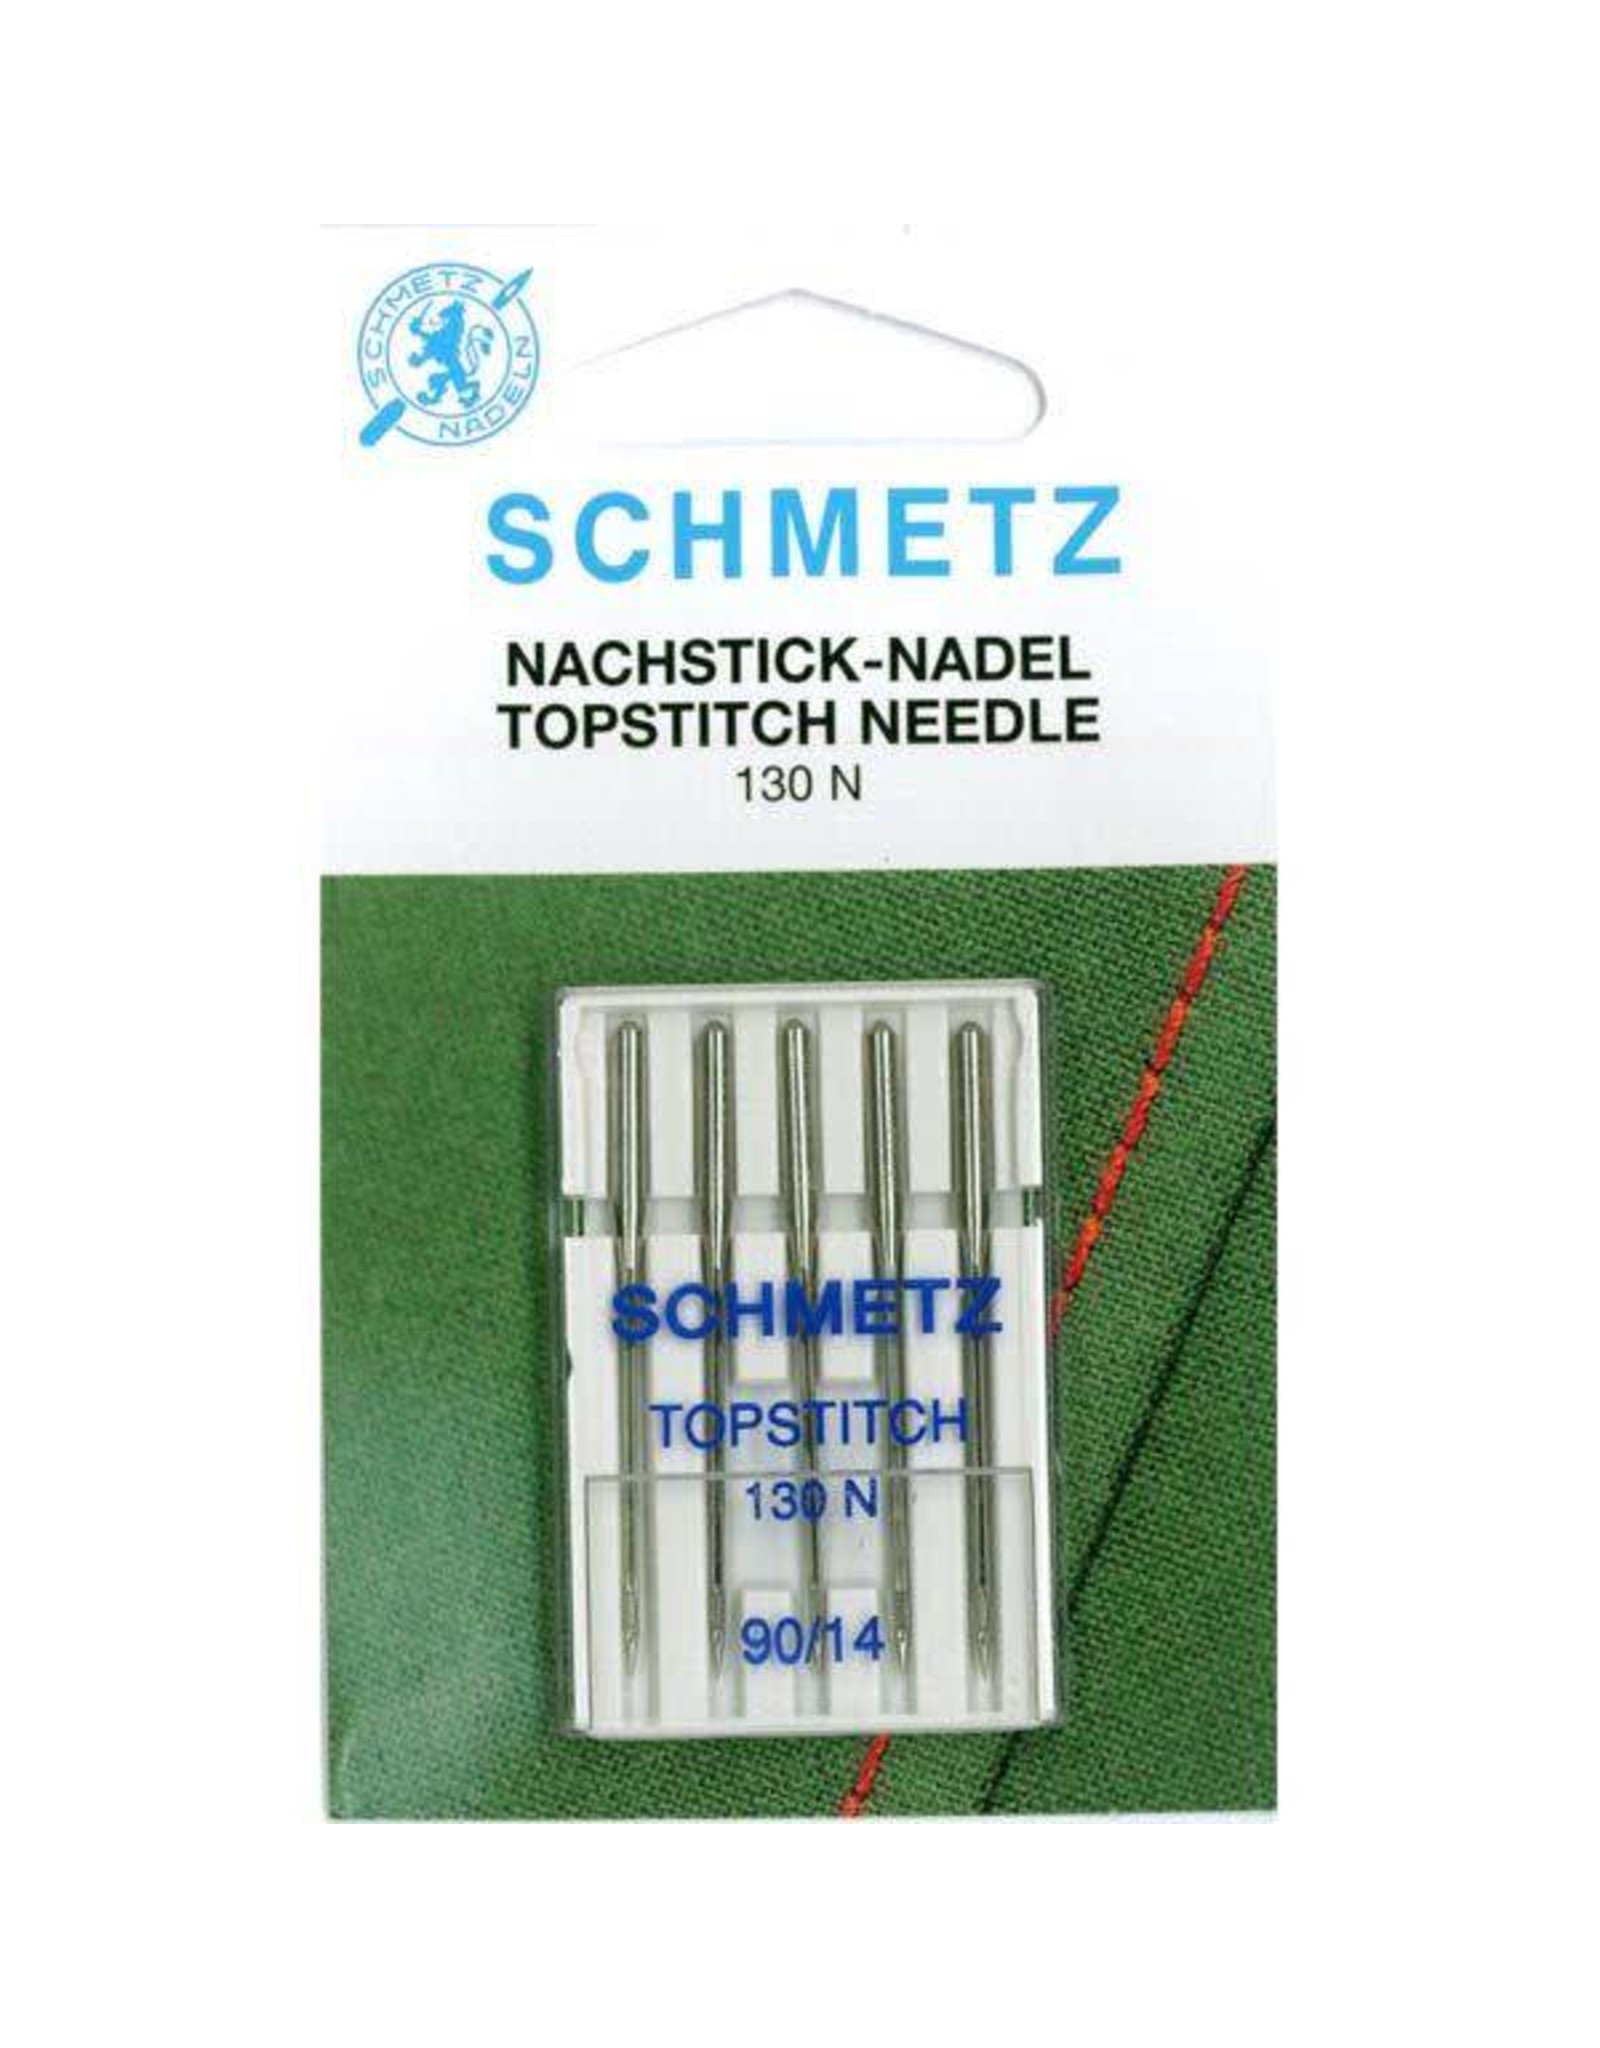 Schmetz Topstitch Needle - 130N - 90